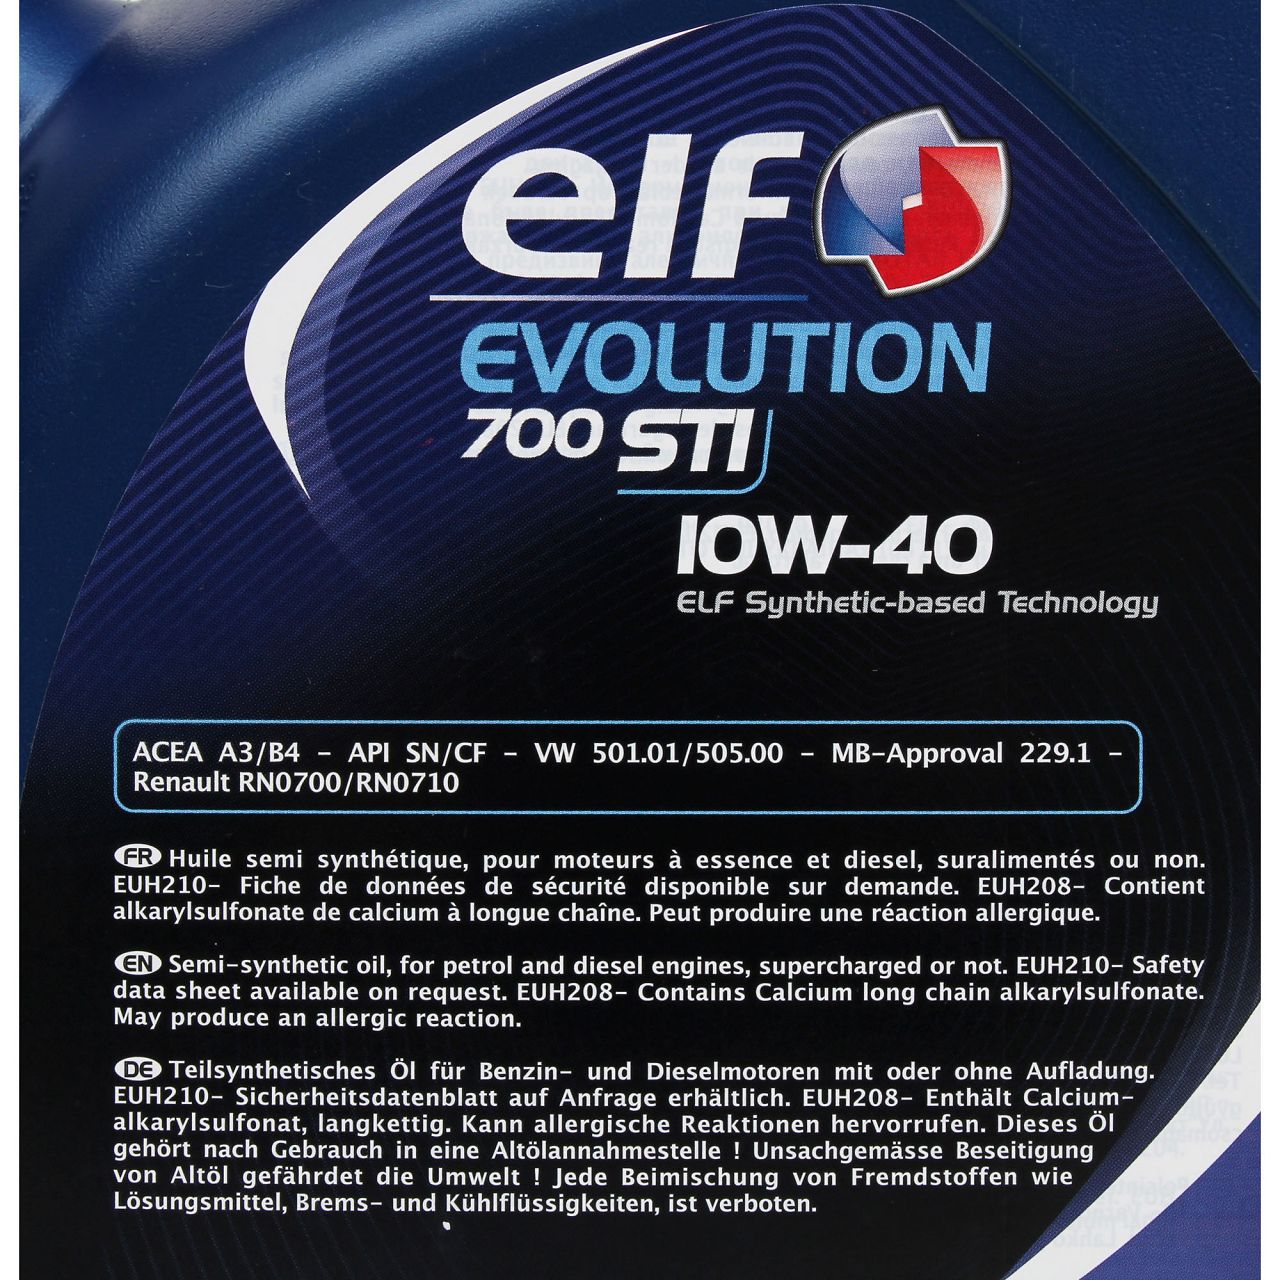 elf Evolution 700 STI 10W-40 Motoröl für VW 501.01/505.00 MB 229.1 - 5 Liter